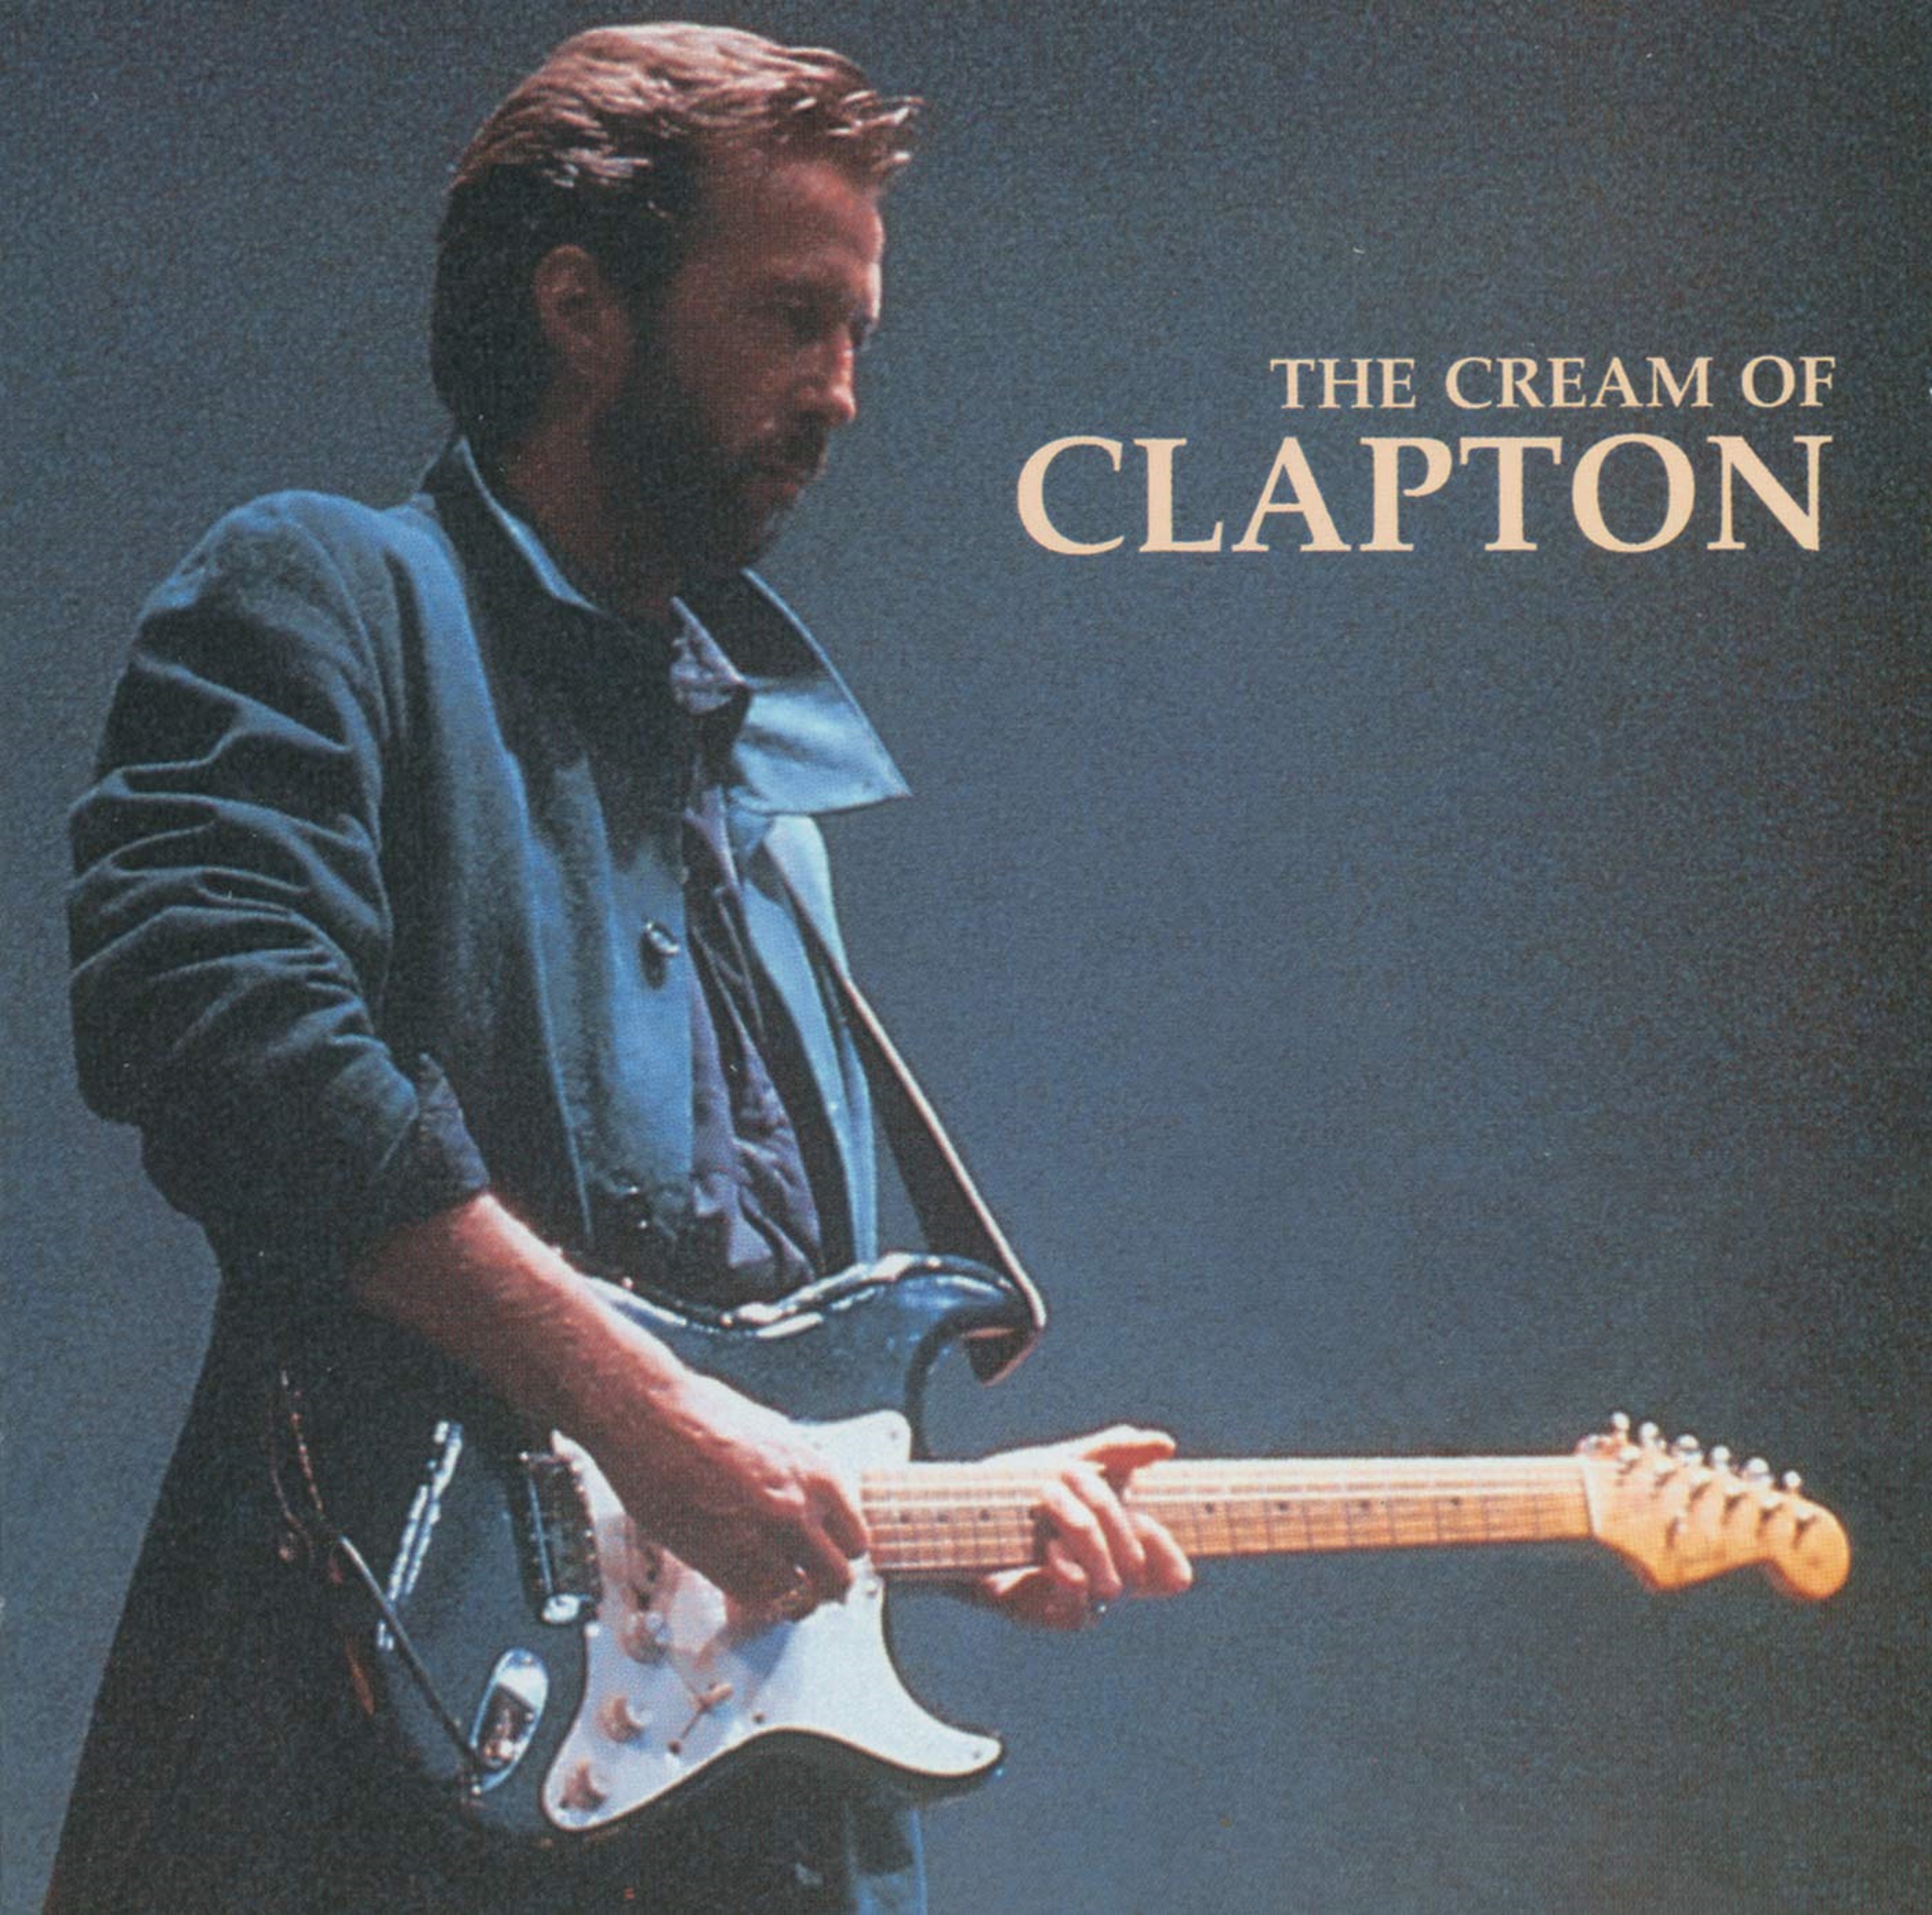 Happy Birthday, Eric Clapton!